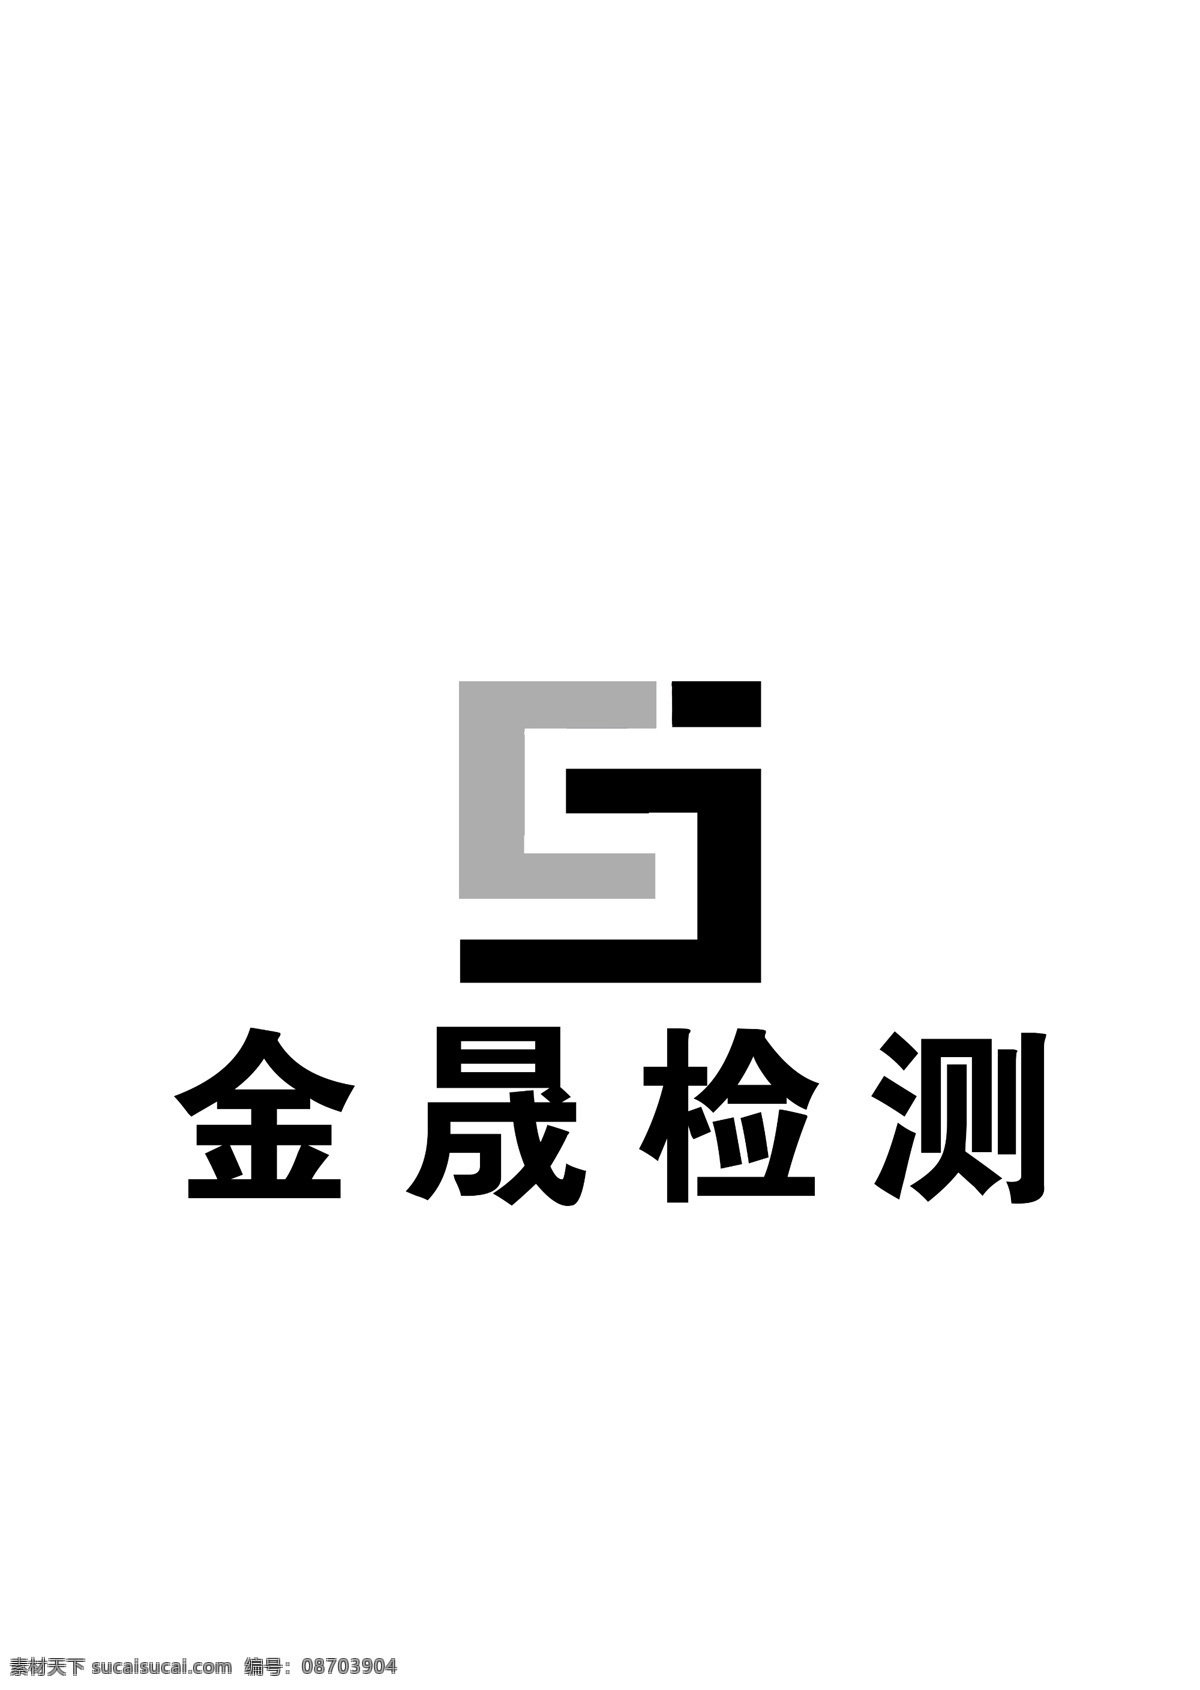 金 晟 检测 标志 logo 检测公司 检测标志 公司logo 3d设计